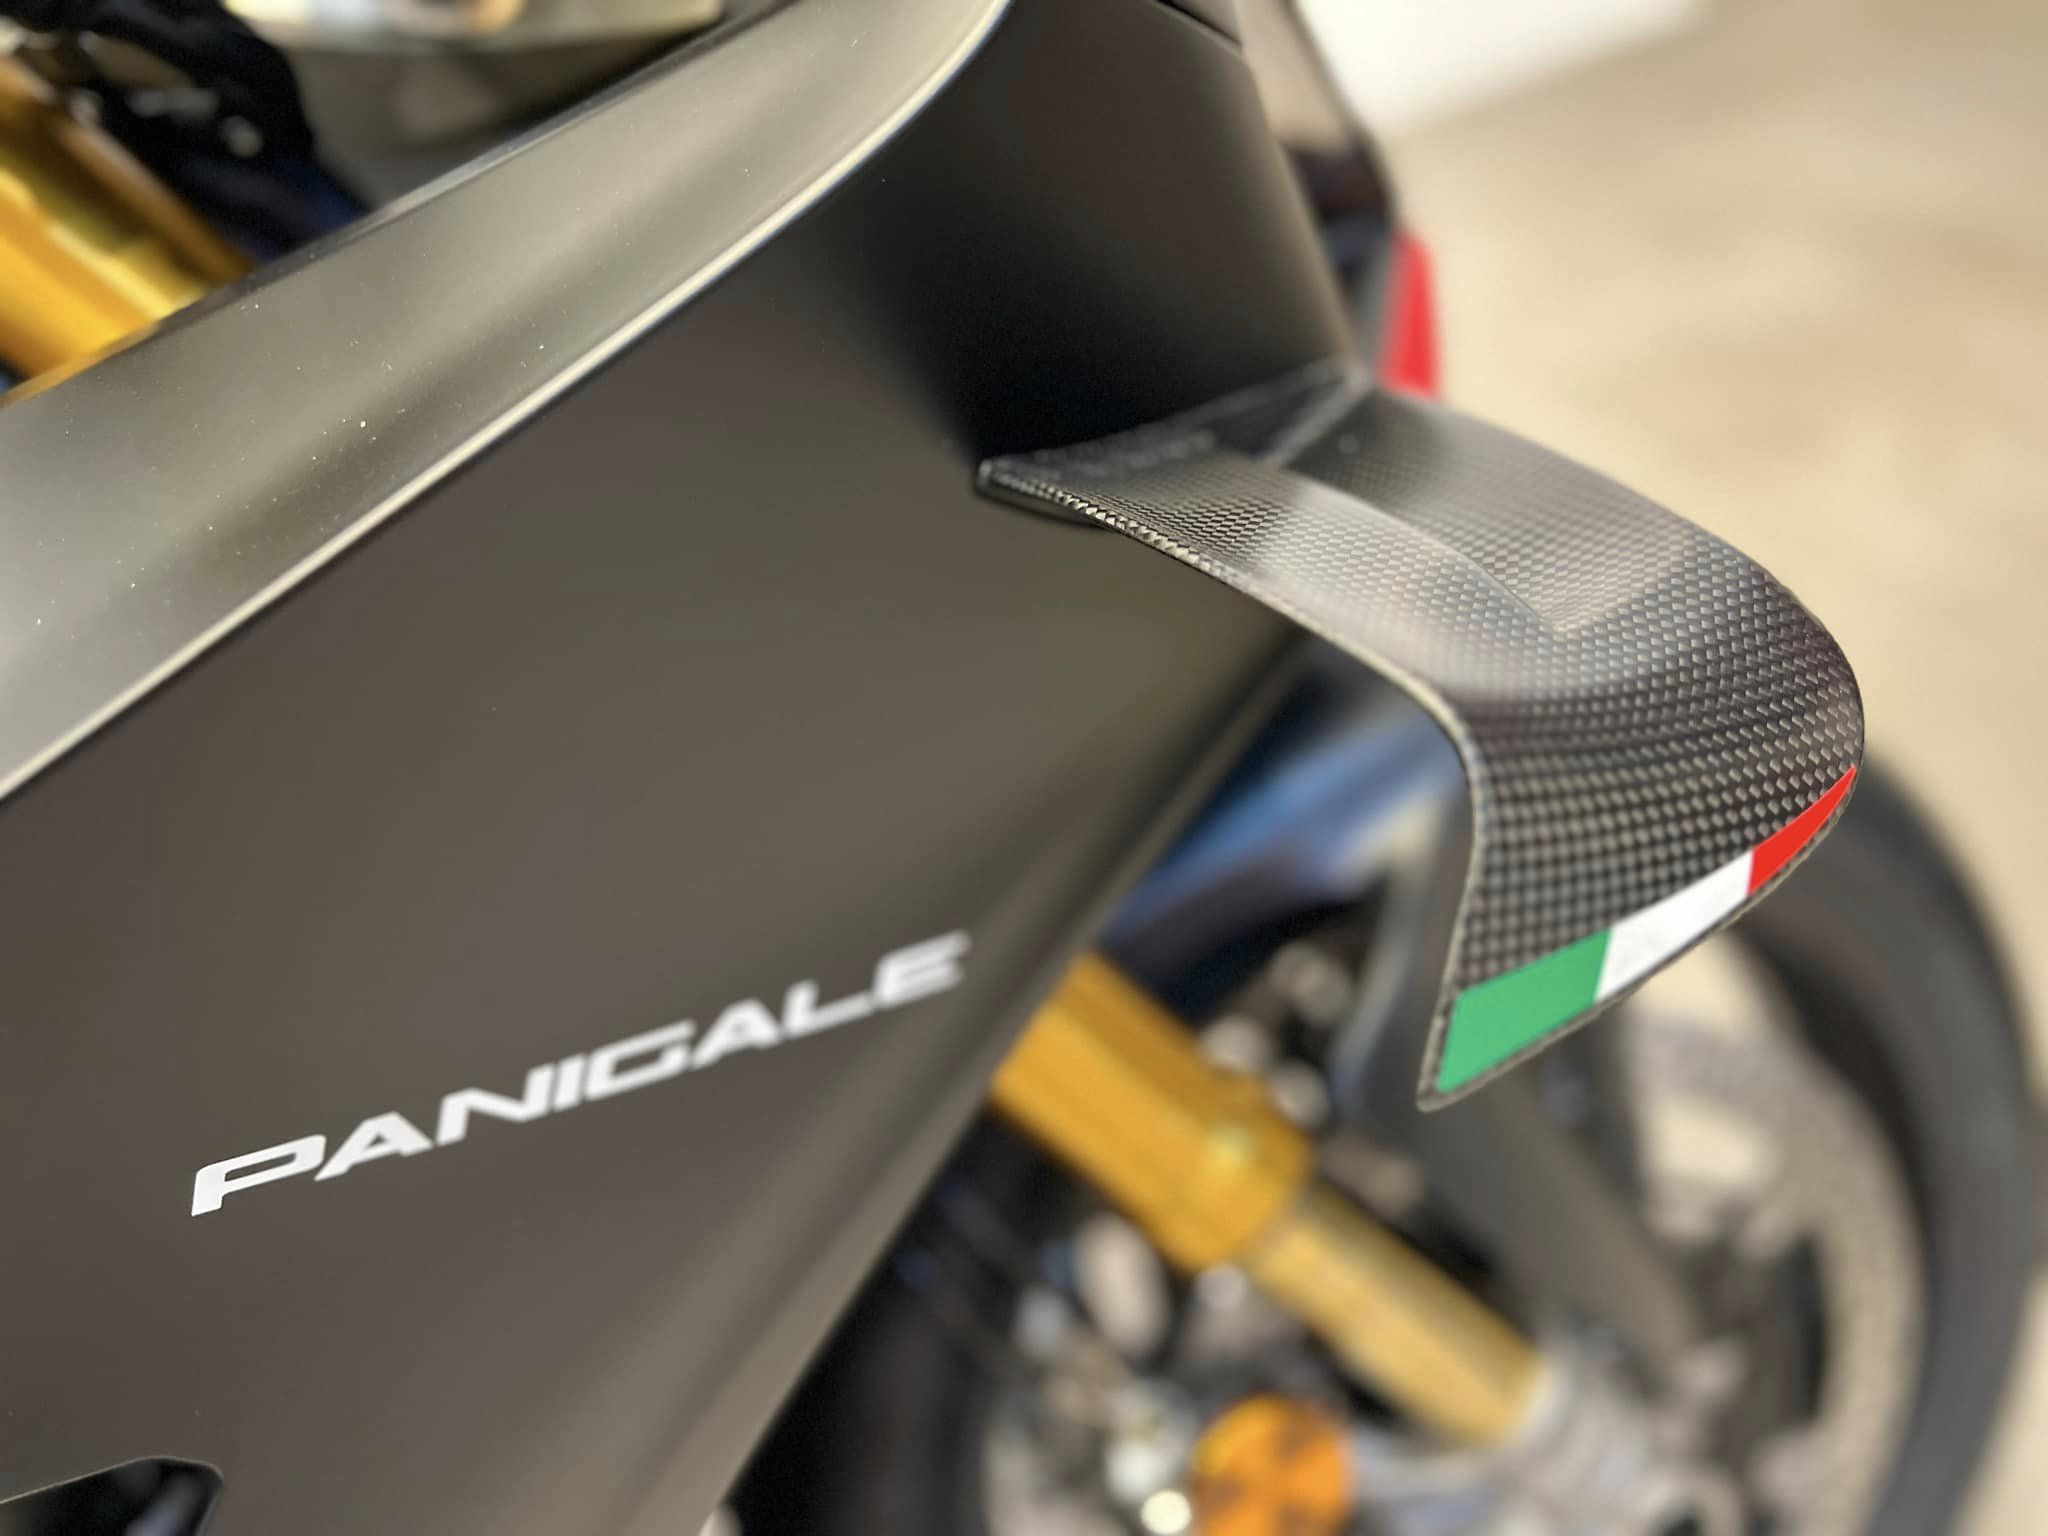 DUCATI PANIGALE V4 S新車出售中 『敏傑康妮』Ducati Panigale V4S/ SP2 期待已久～ 實車抵台囉！馬力完全沒被閹割 | 敏傑車業資深銷售專員 康妮 Connie